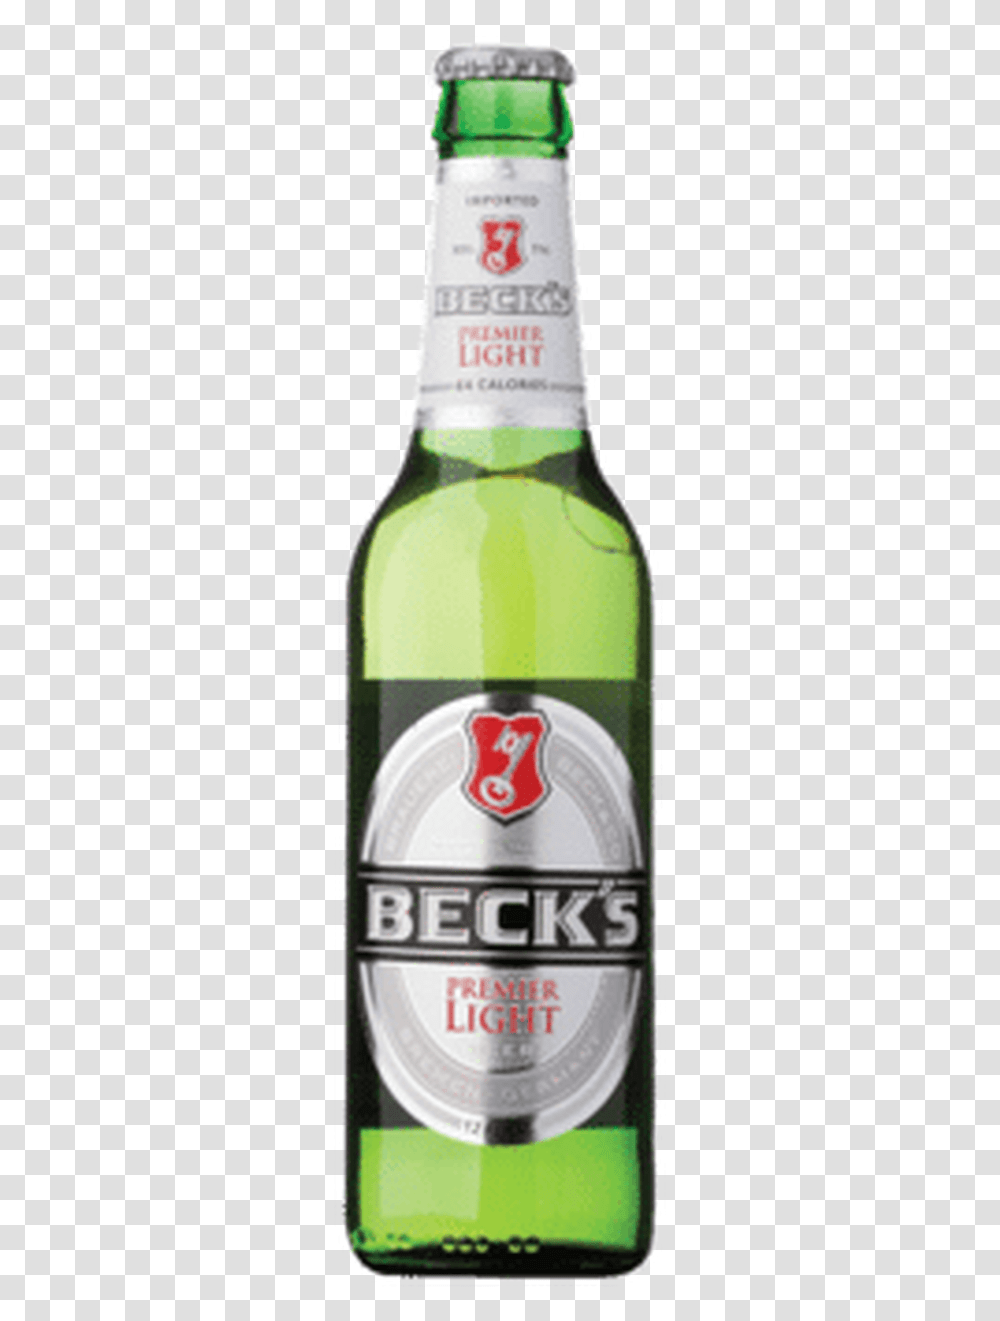 Becks Beer, Alcohol, Beverage, Drink, Bottle Transparent Png